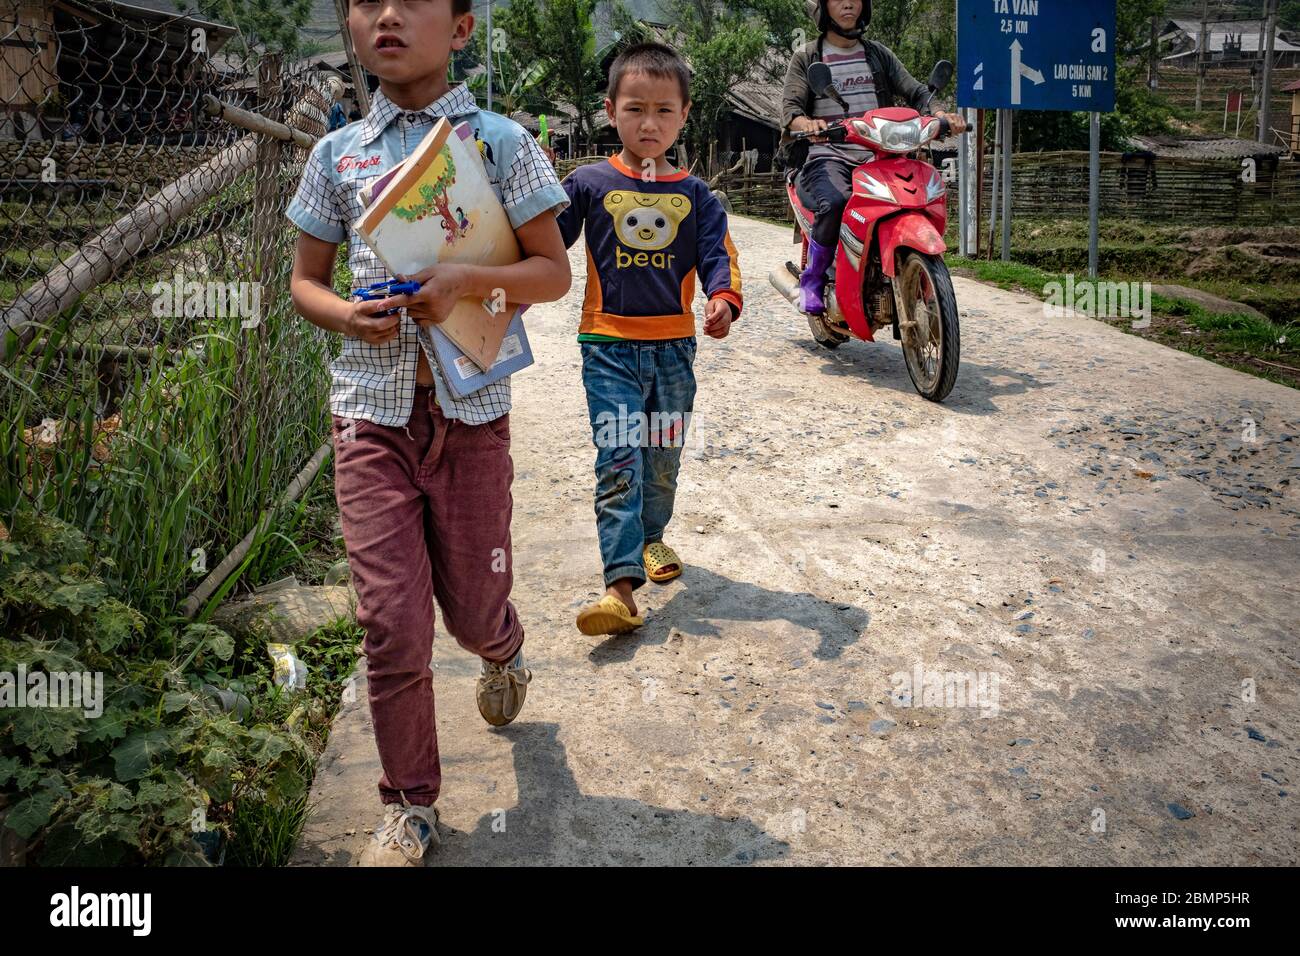 SA Vietnam - 24 de abril de 2018: Los muchachos vietnamitas en su a la escuela, usando ropa casual pero colorida, tomados en un día nublado Fotografía de - Alamy